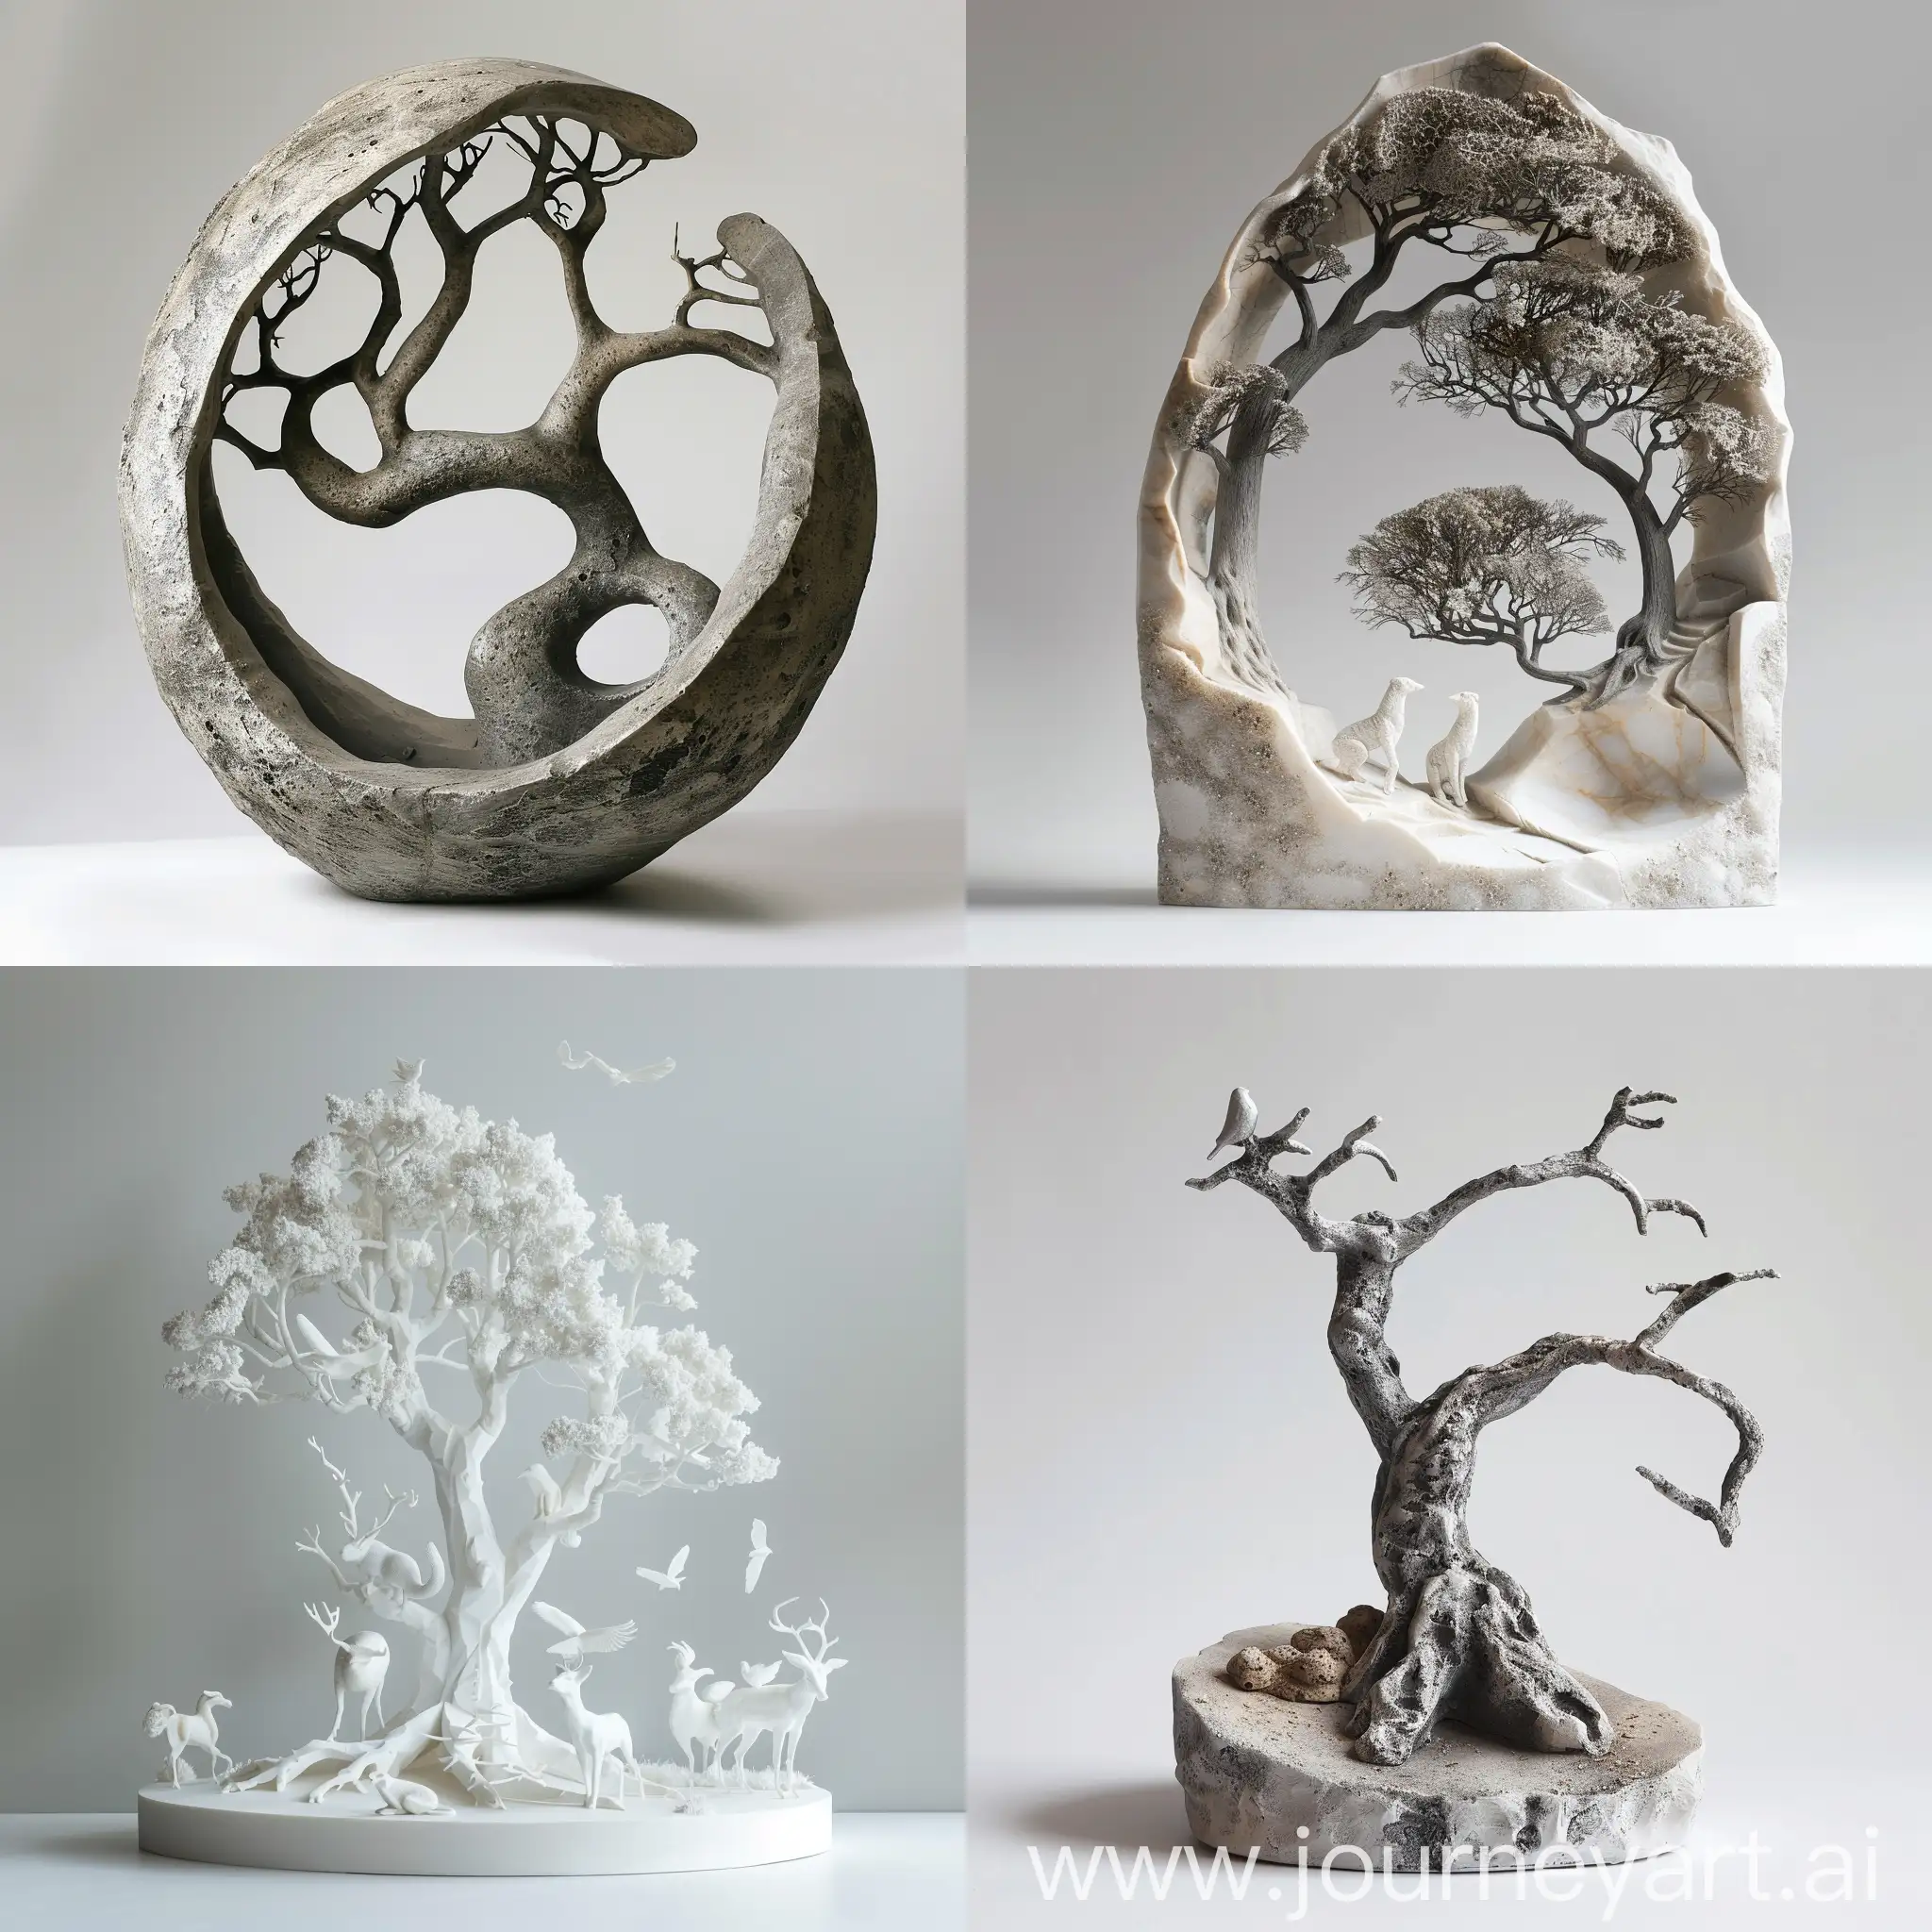 Escultura conceptual relacionada con los árboles y los animales que este muy sencilla peri qué represente a la naturaleza 